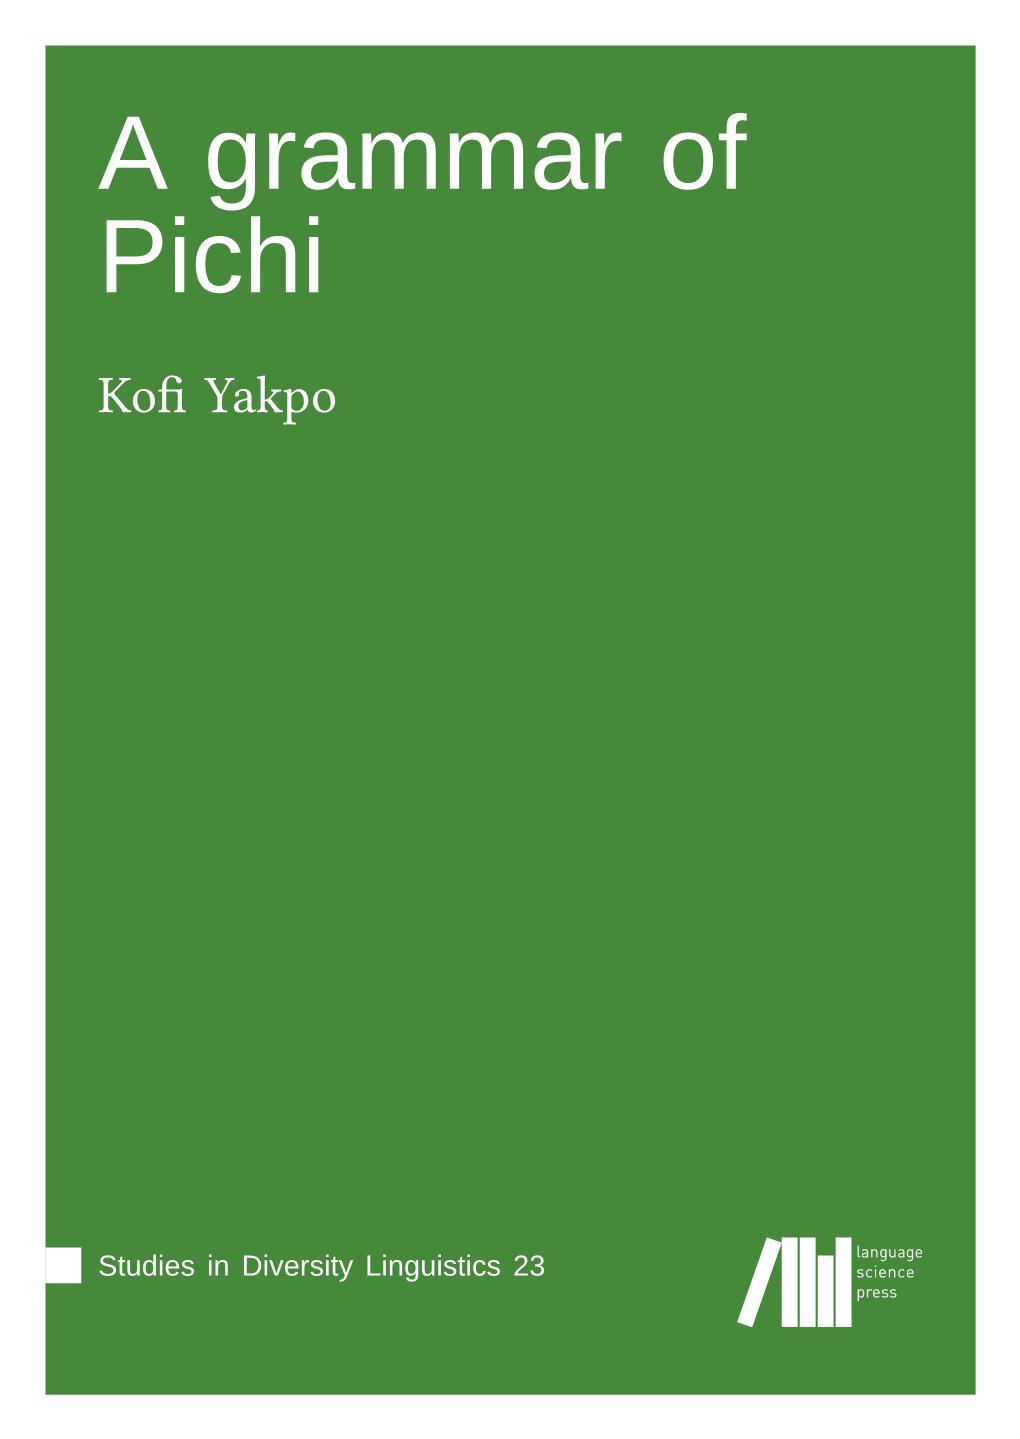 A Grammar of Pichi